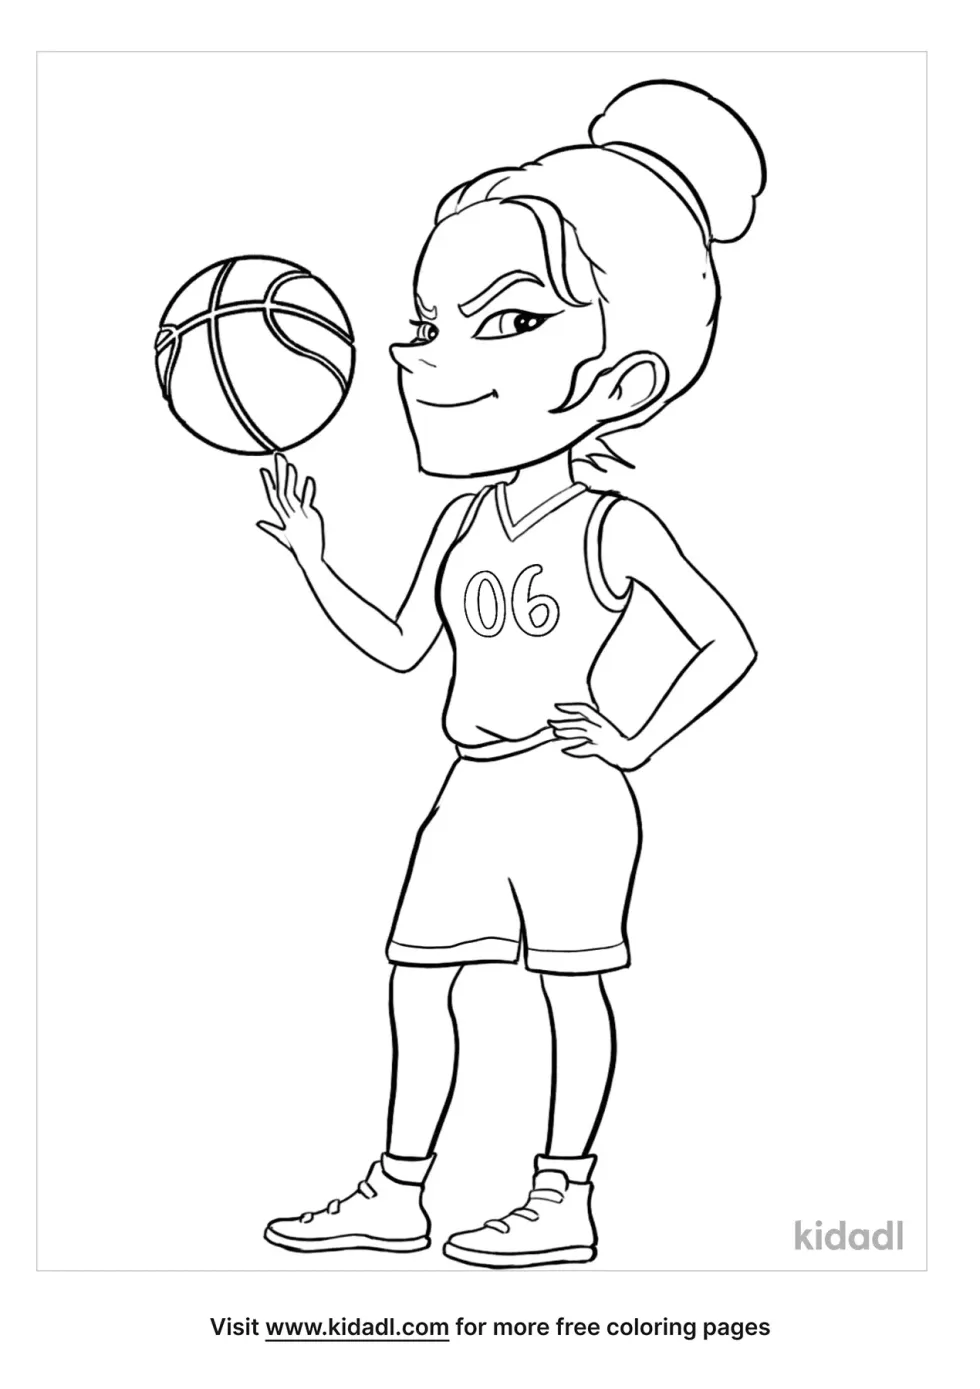 Woman Basketball Player